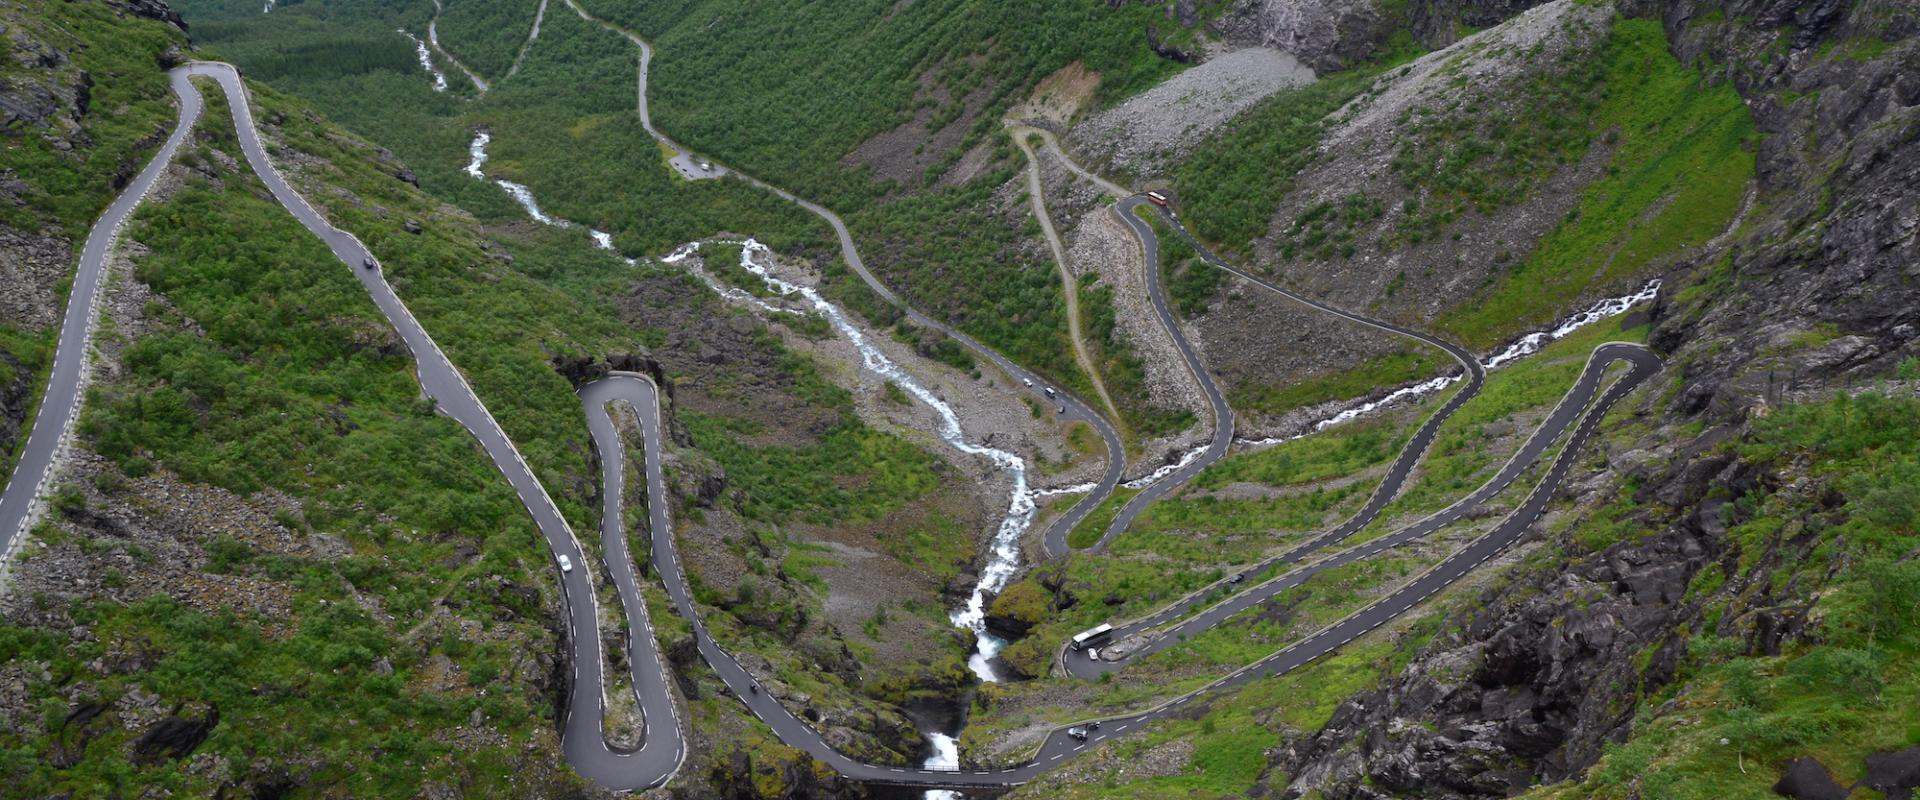 Serpentinen des Trollstigen mit Wasserfällen in grüner Berglandschaft